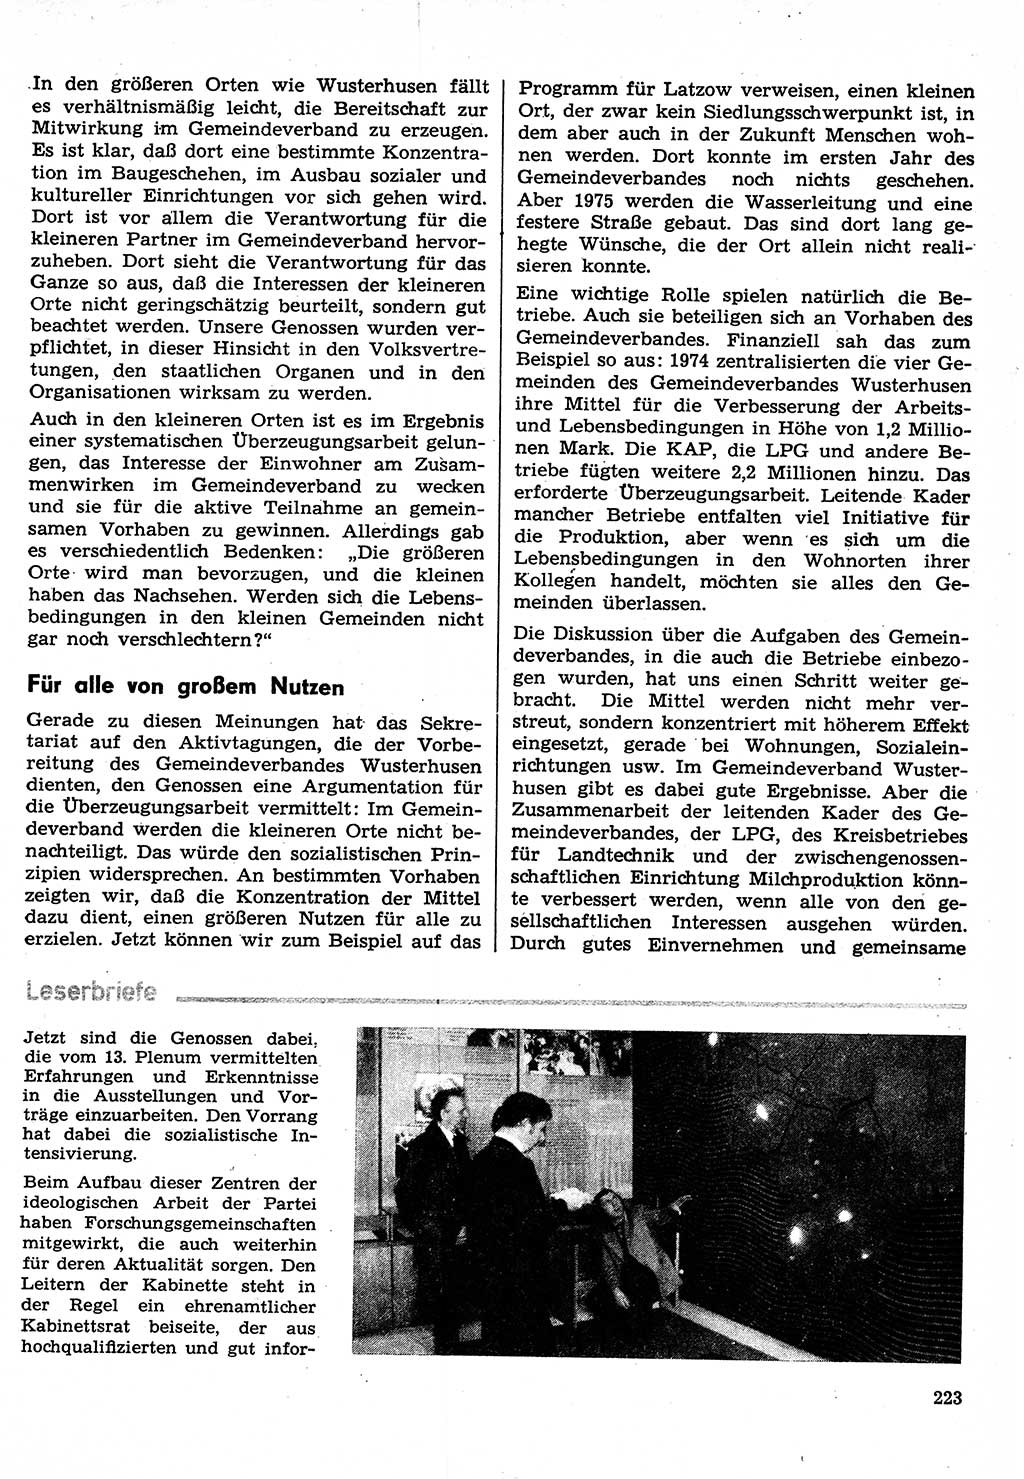 Neuer Weg (NW), Organ des Zentralkomitees (ZK) der SED (Sozialistische Einheitspartei Deutschlands) für Fragen des Parteilebens, 30. Jahrgang [Deutsche Demokratische Republik (DDR)] 1975, Seite 223 (NW ZK SED DDR 1975, S. 223)